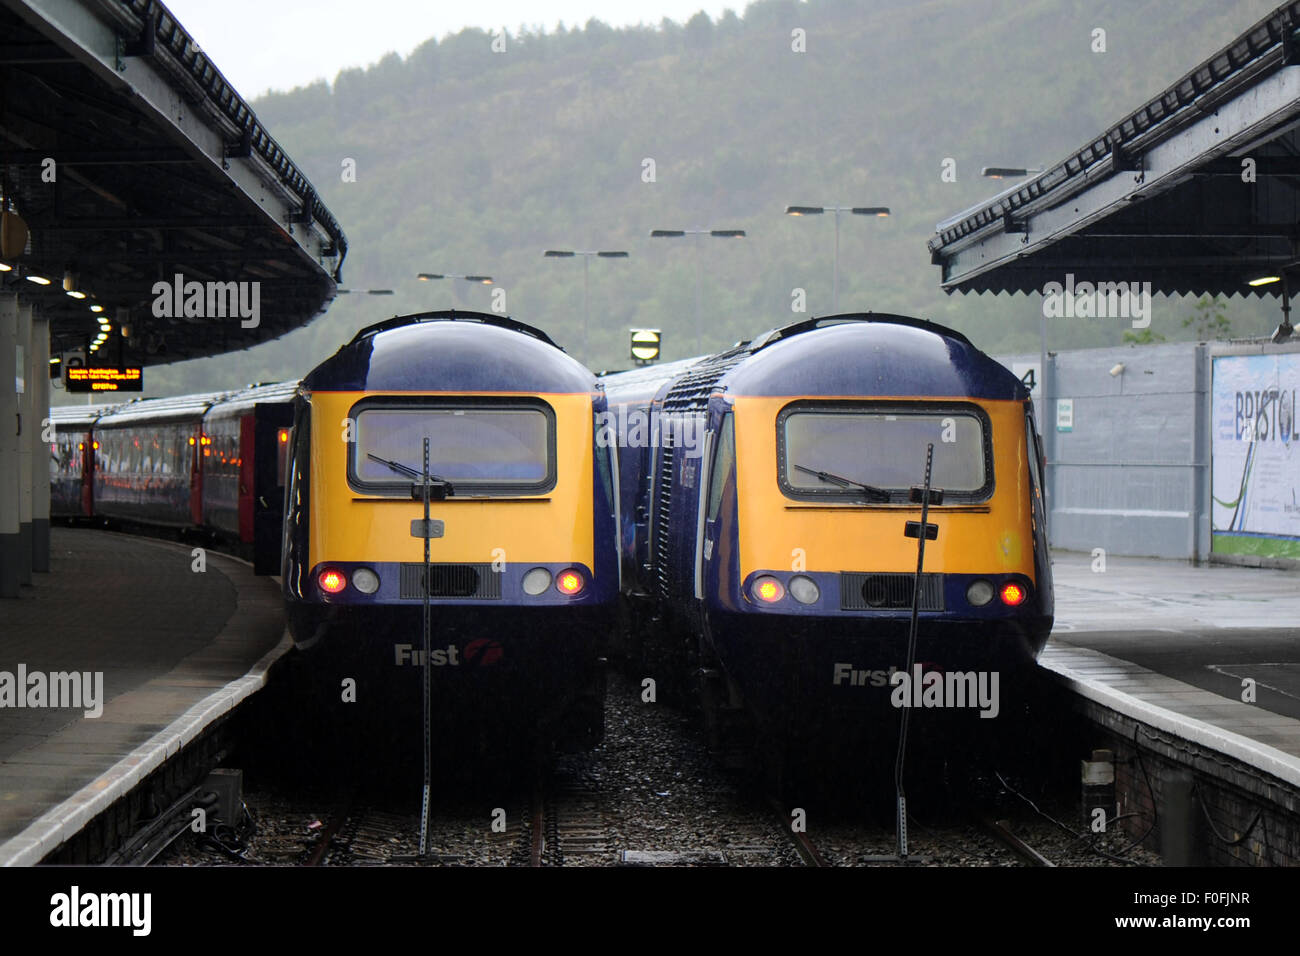 Zwei Züge der First Great Western bei Swansea Bahnhof Stockfotografie